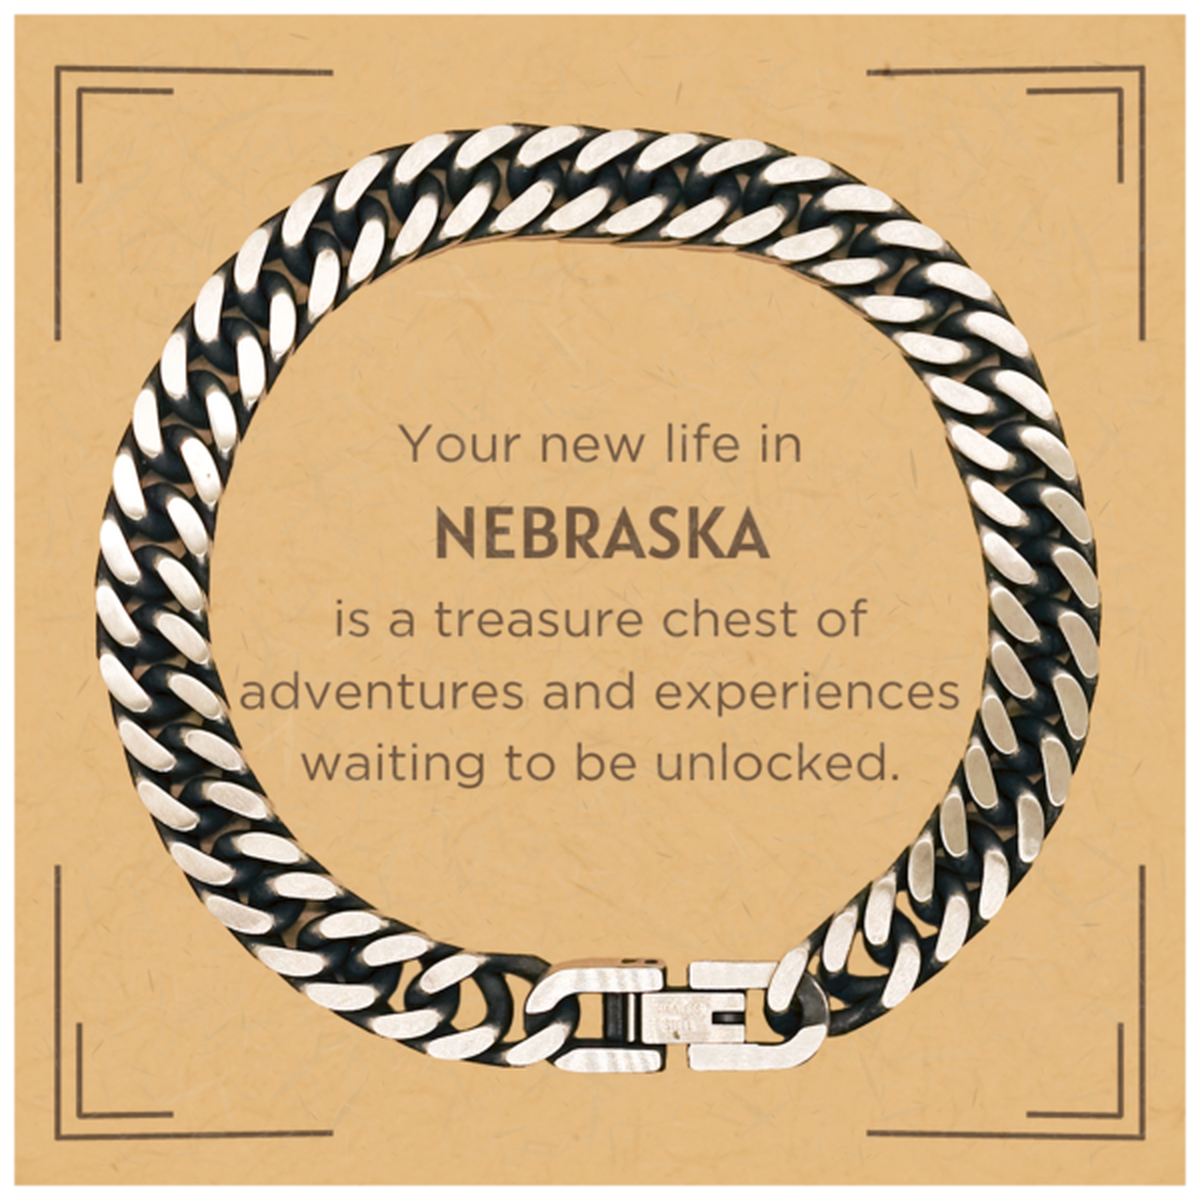 Moving to Nebraska Gifts, Your new life in Nebraska, Long Distance Nebraska Christmas Cuban Link Chain Bracelet For Men, Women, Friends, Coworkers